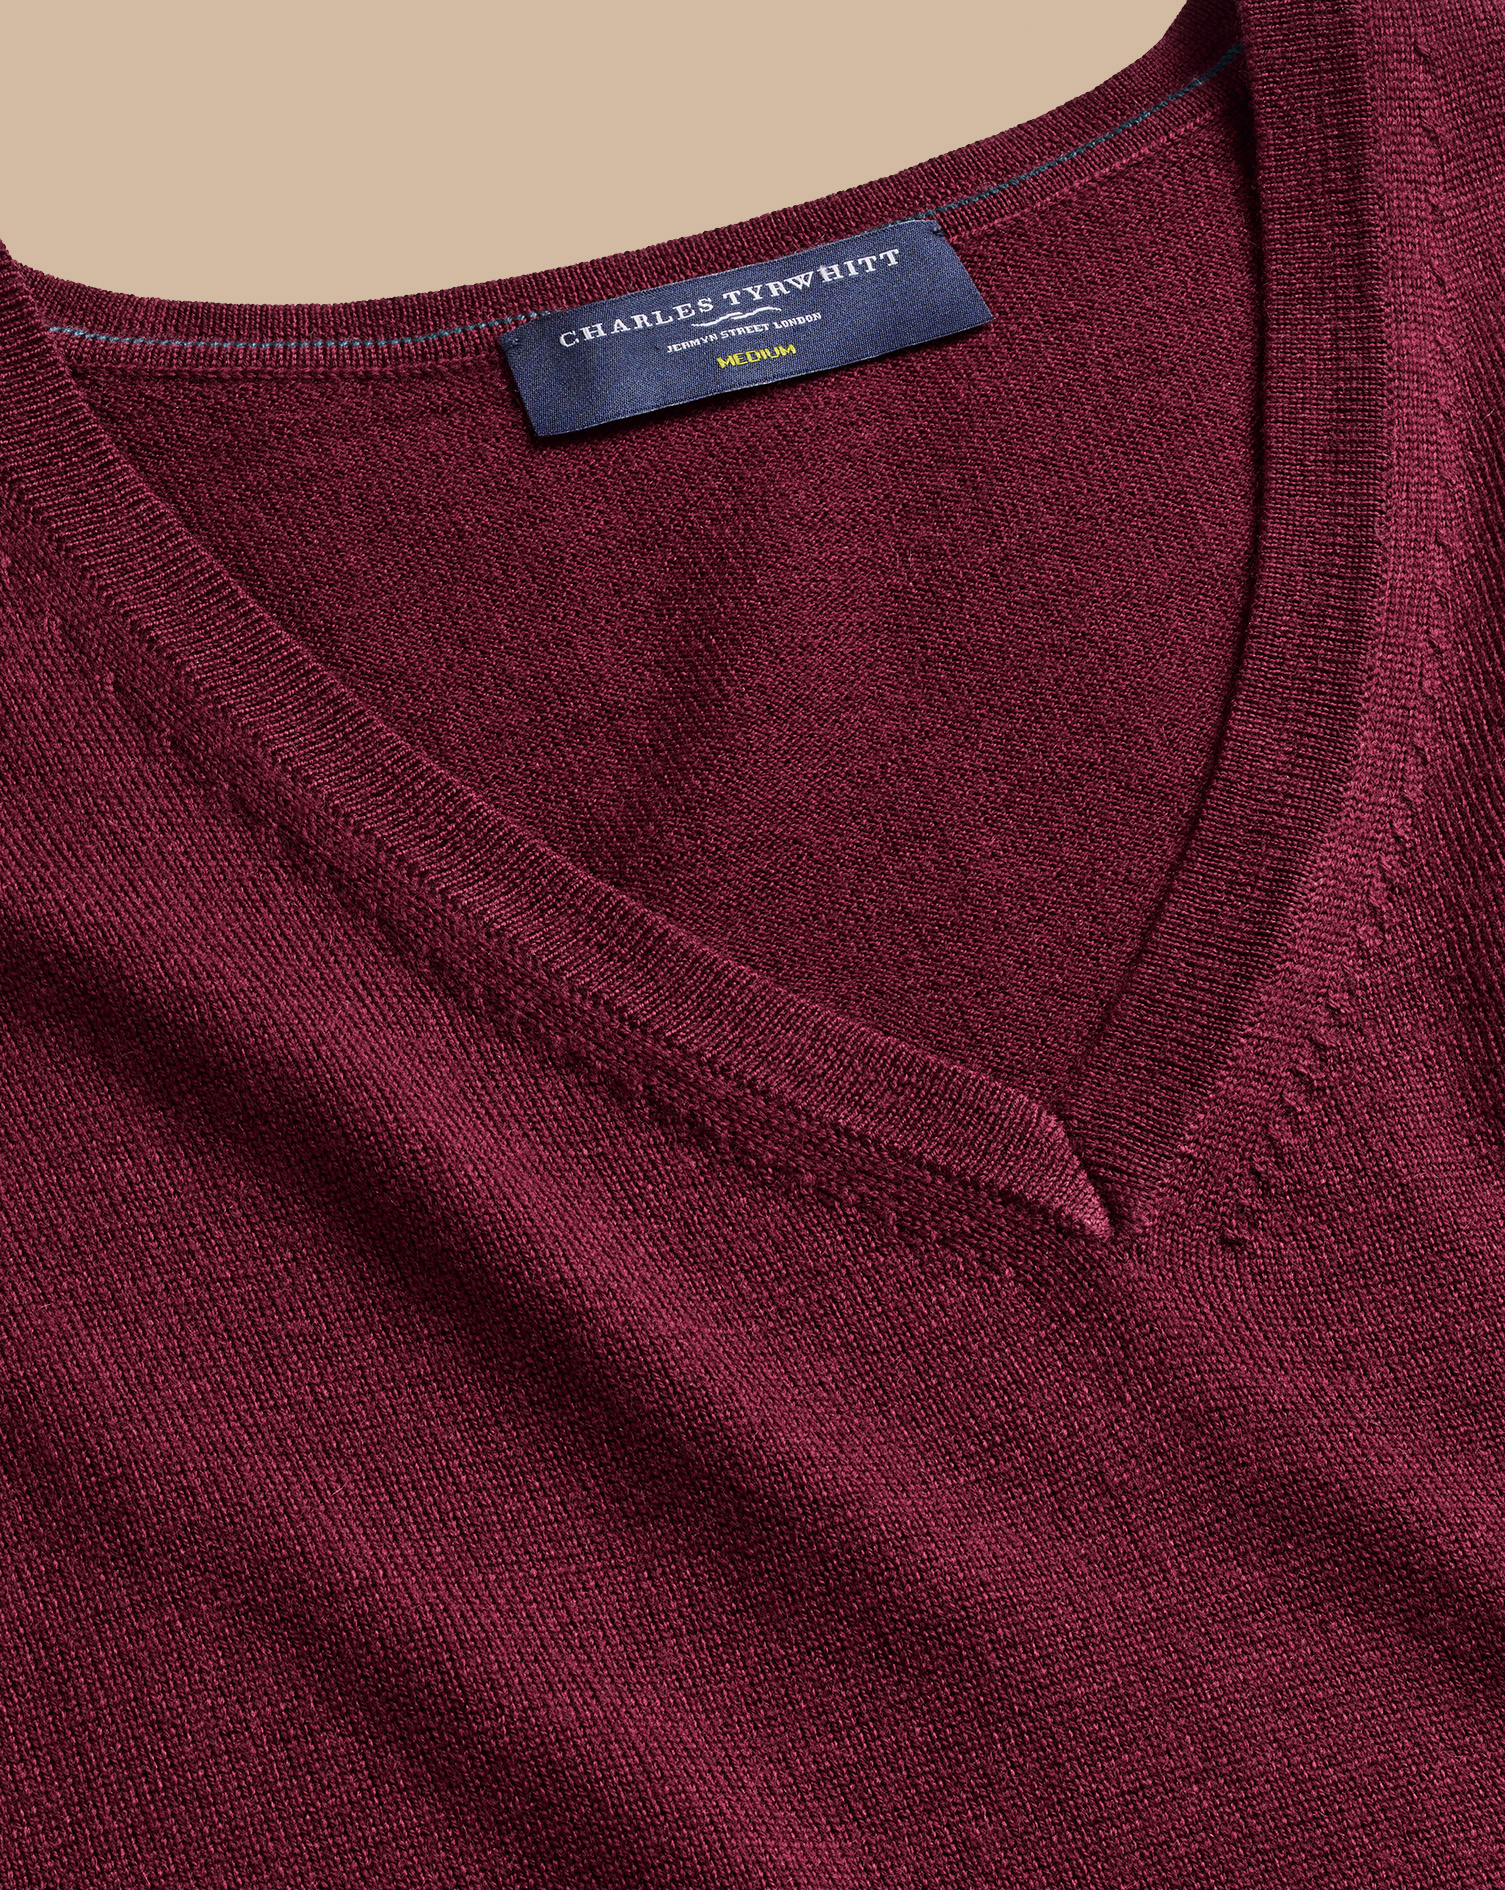 Men's Charles Tyrwhitt V-Neck Sweater - Burgundy Red Size Small Merino
